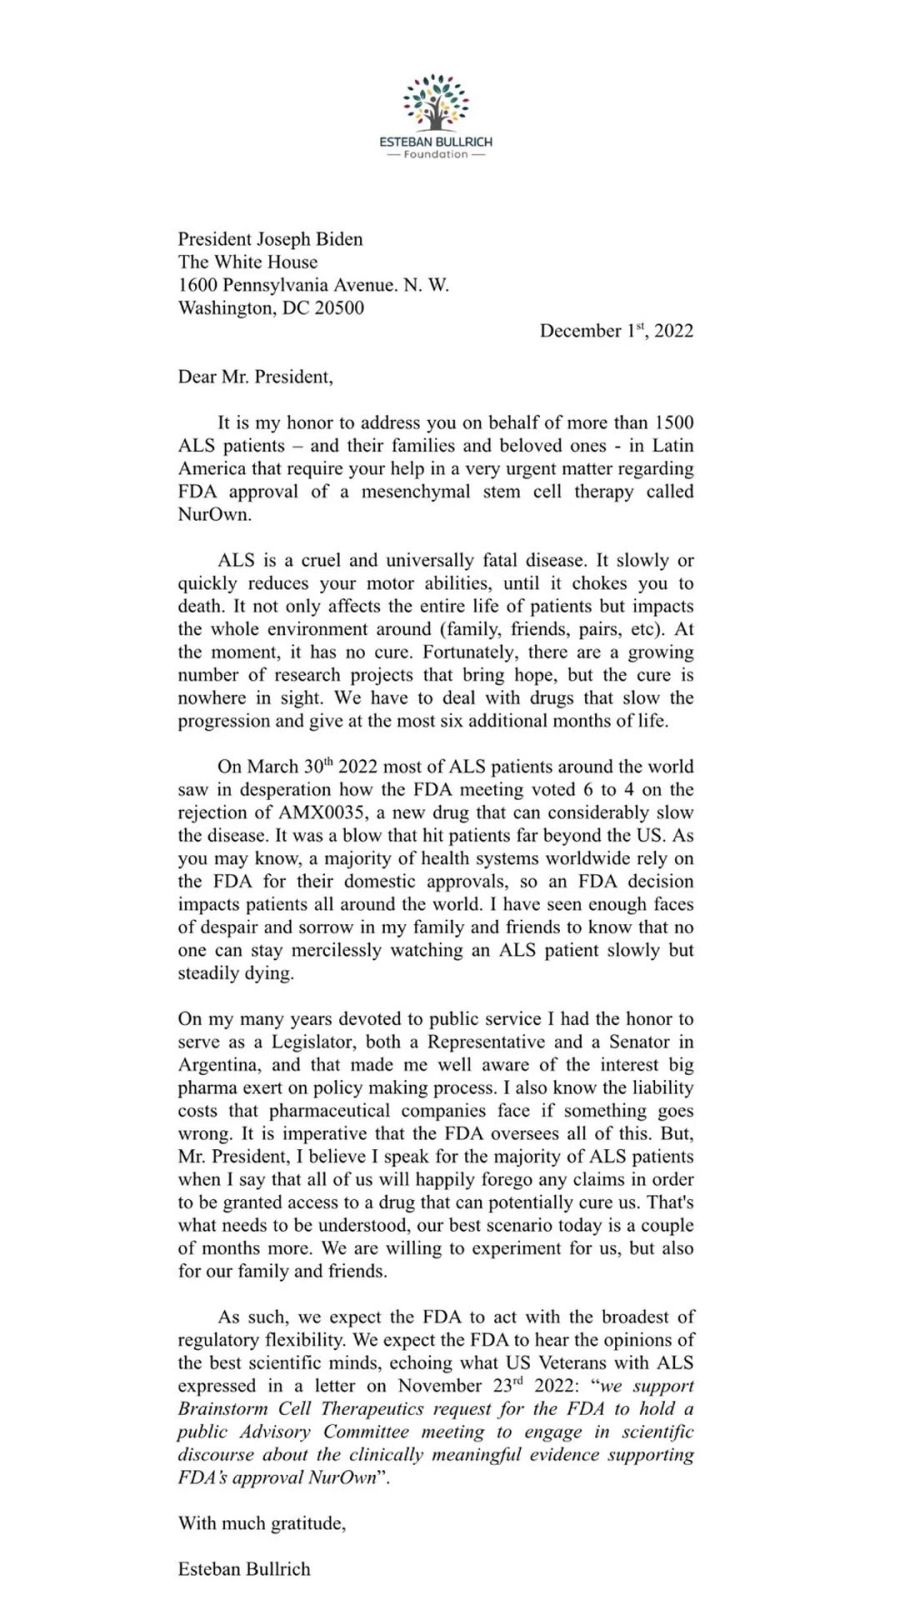 Carta de Esteban Bullrich a Joe Biden 20221130